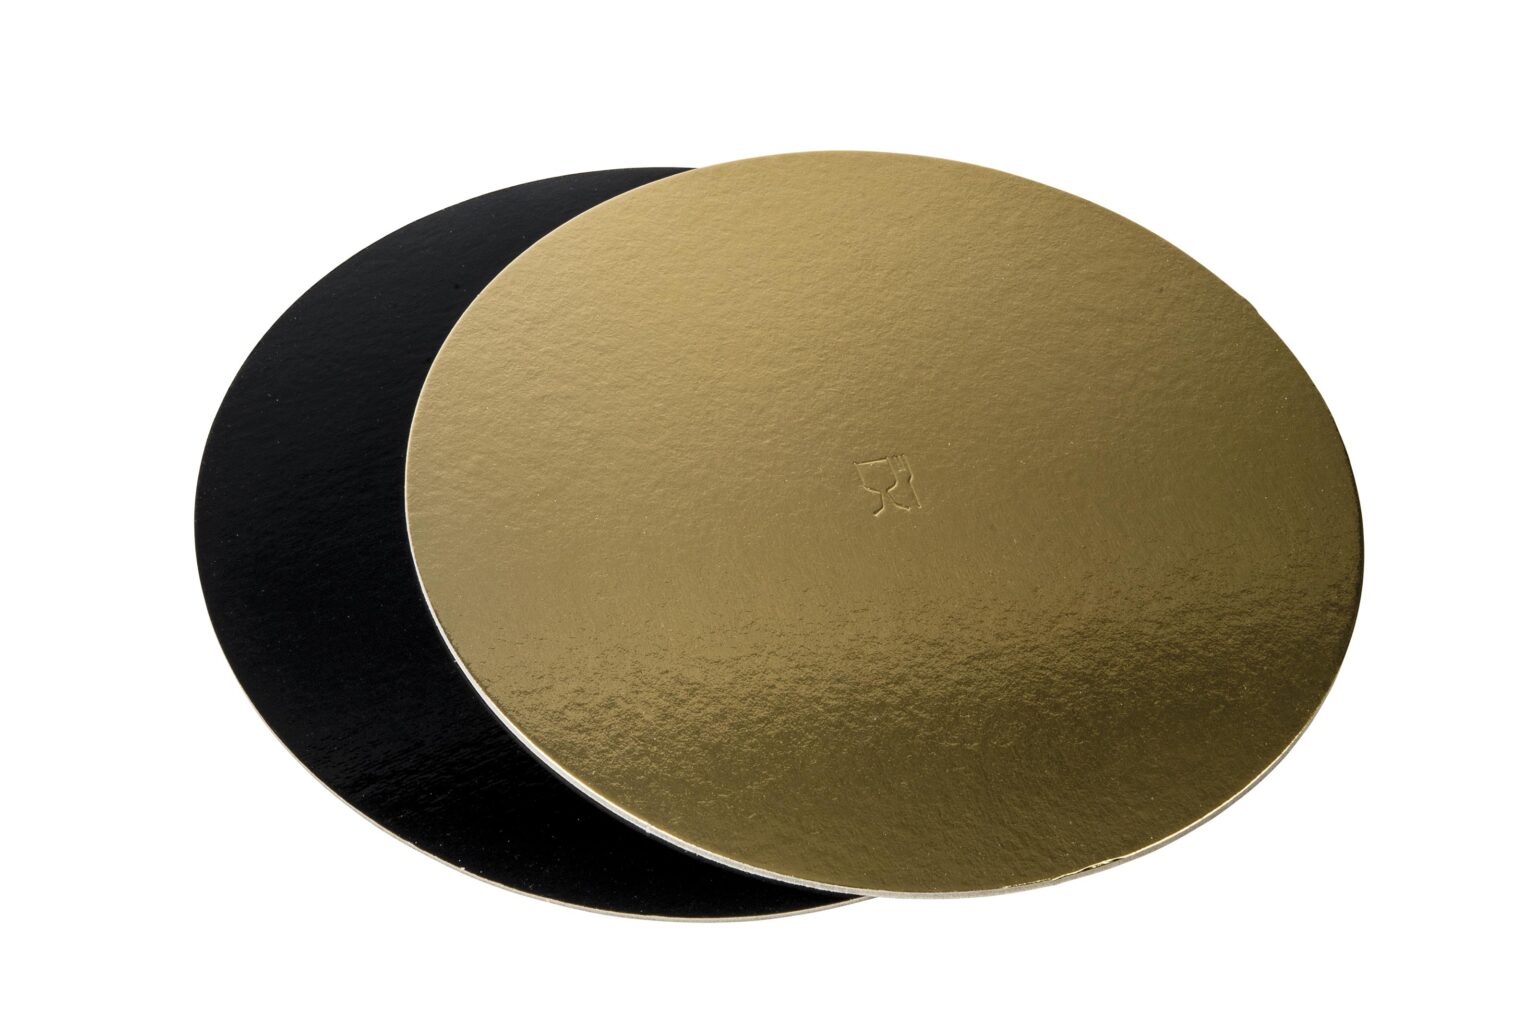 Discuri groase auriu/negru - Discuri groase auriu/negru 2400 gr OE50cm -10 buc/set